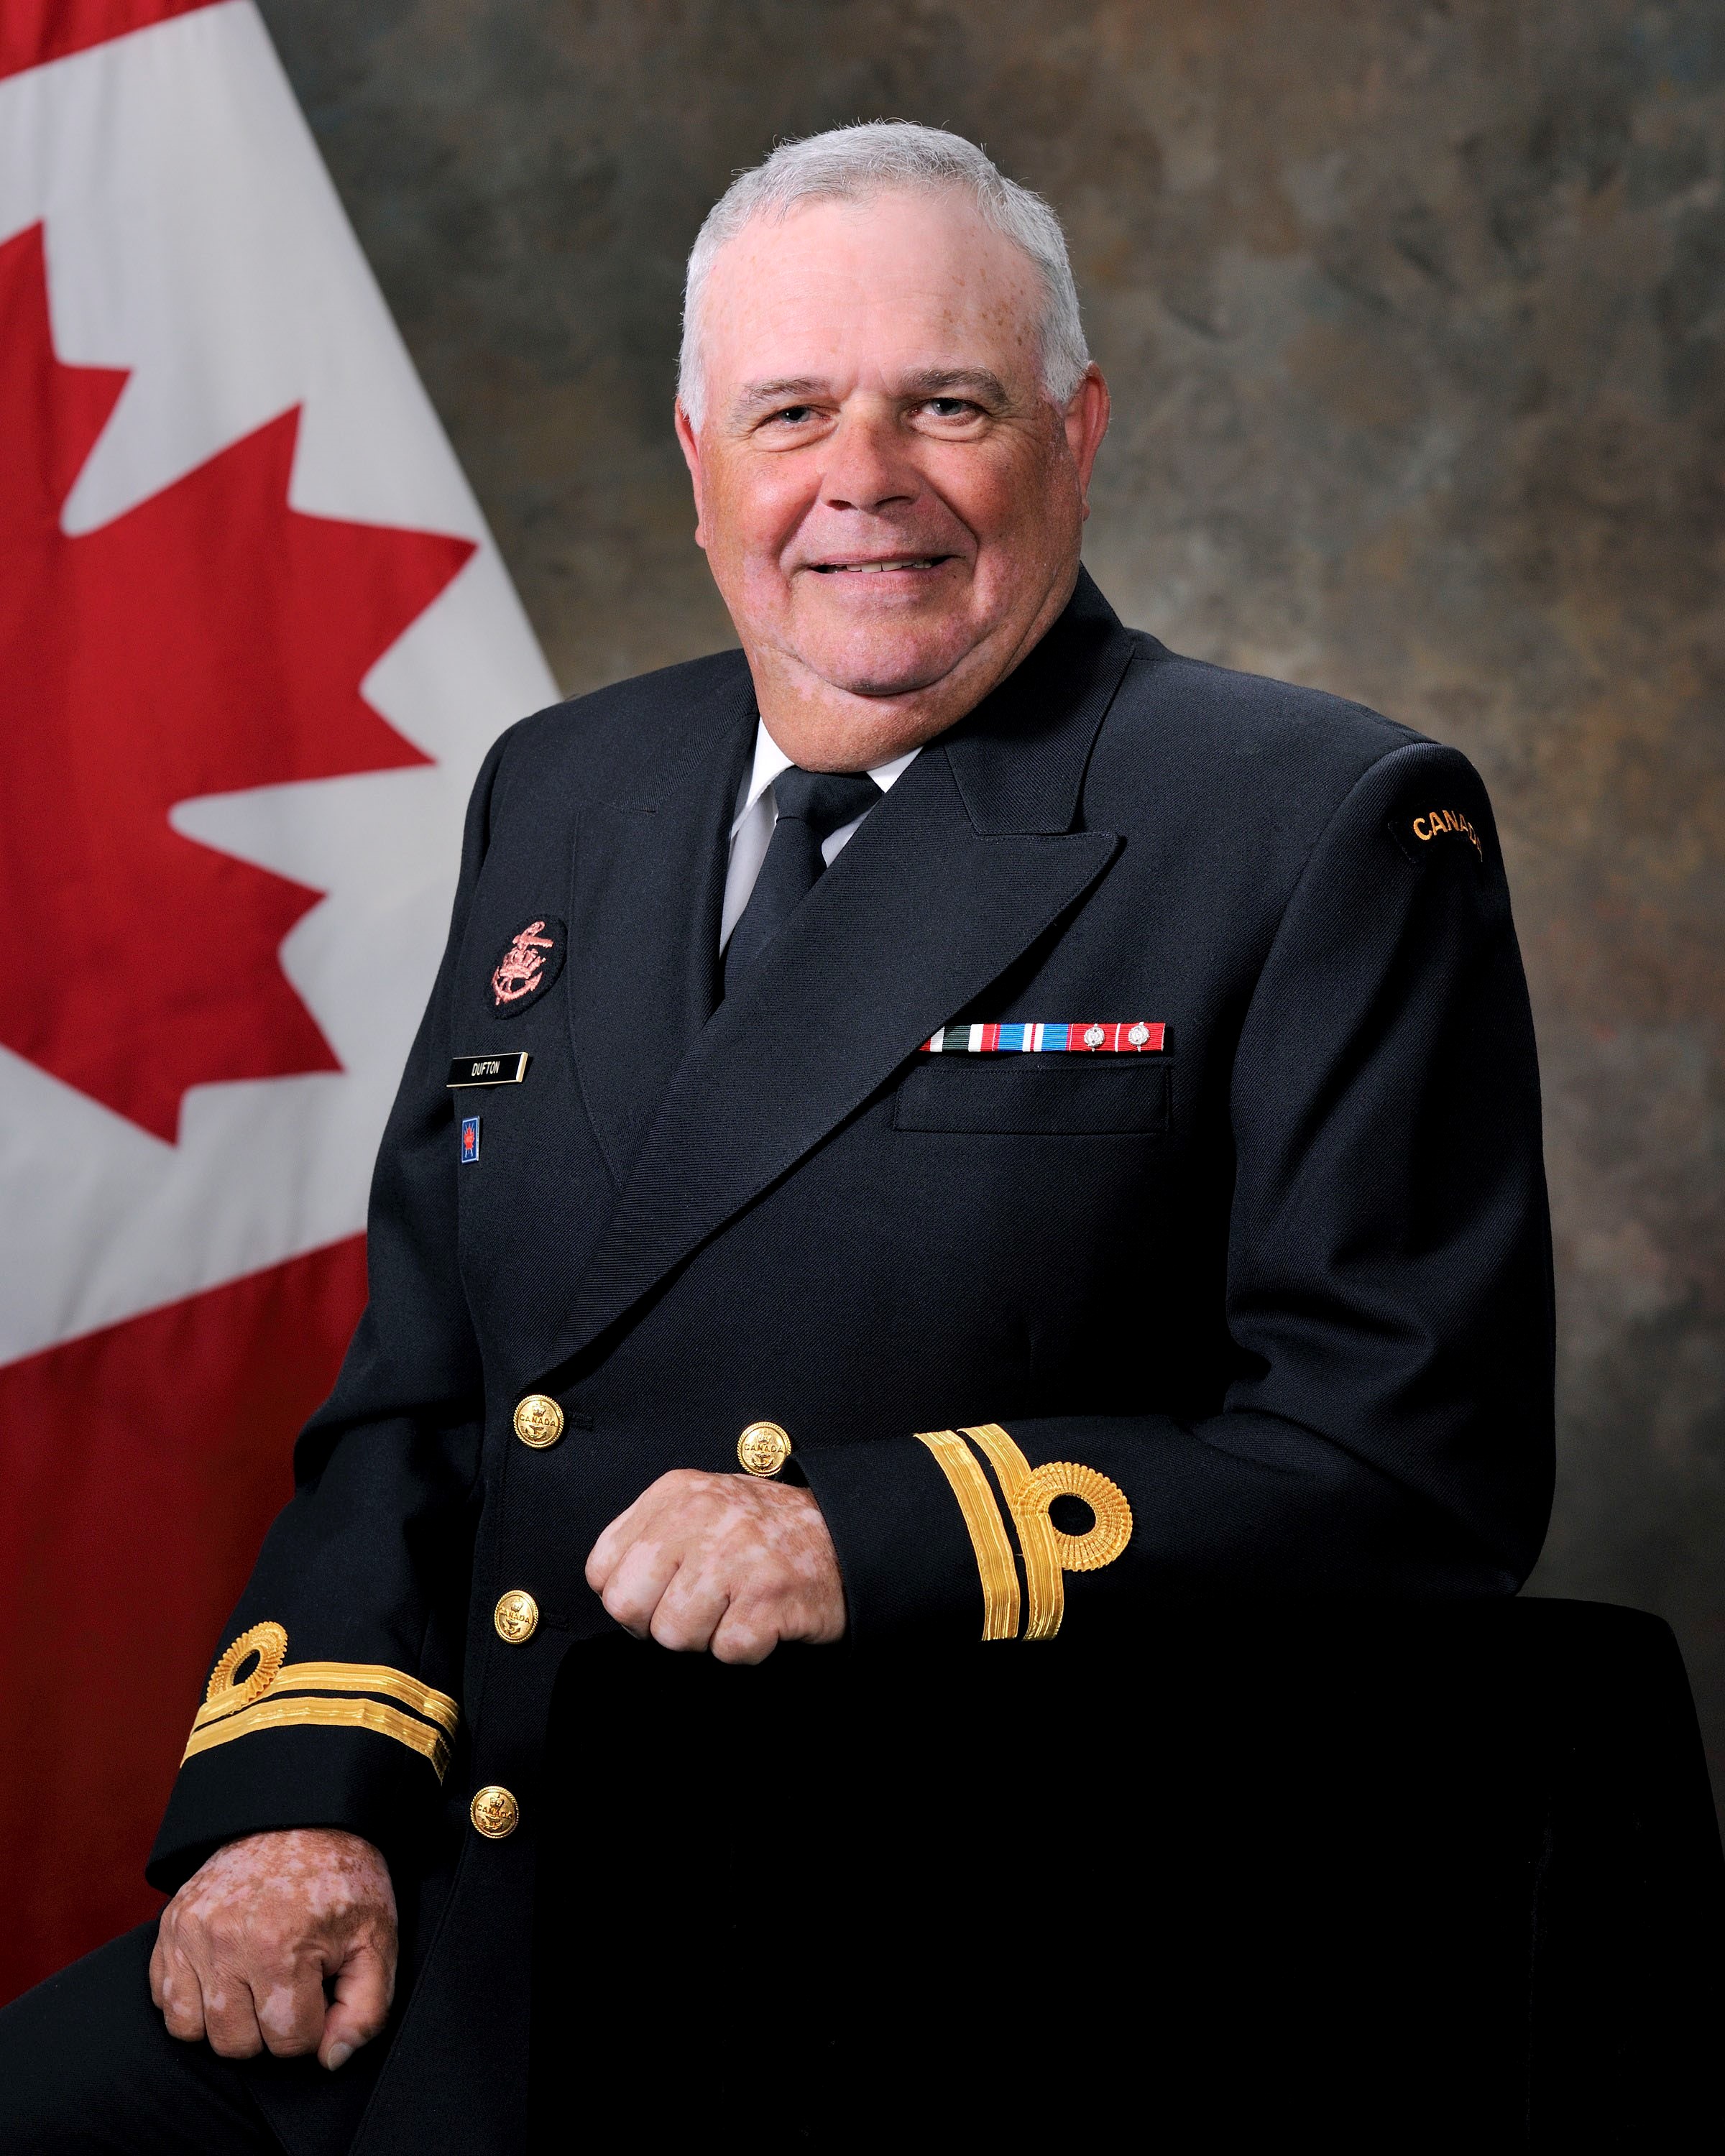 Lieutenant de vaisseau (retraité) Charles Dufton